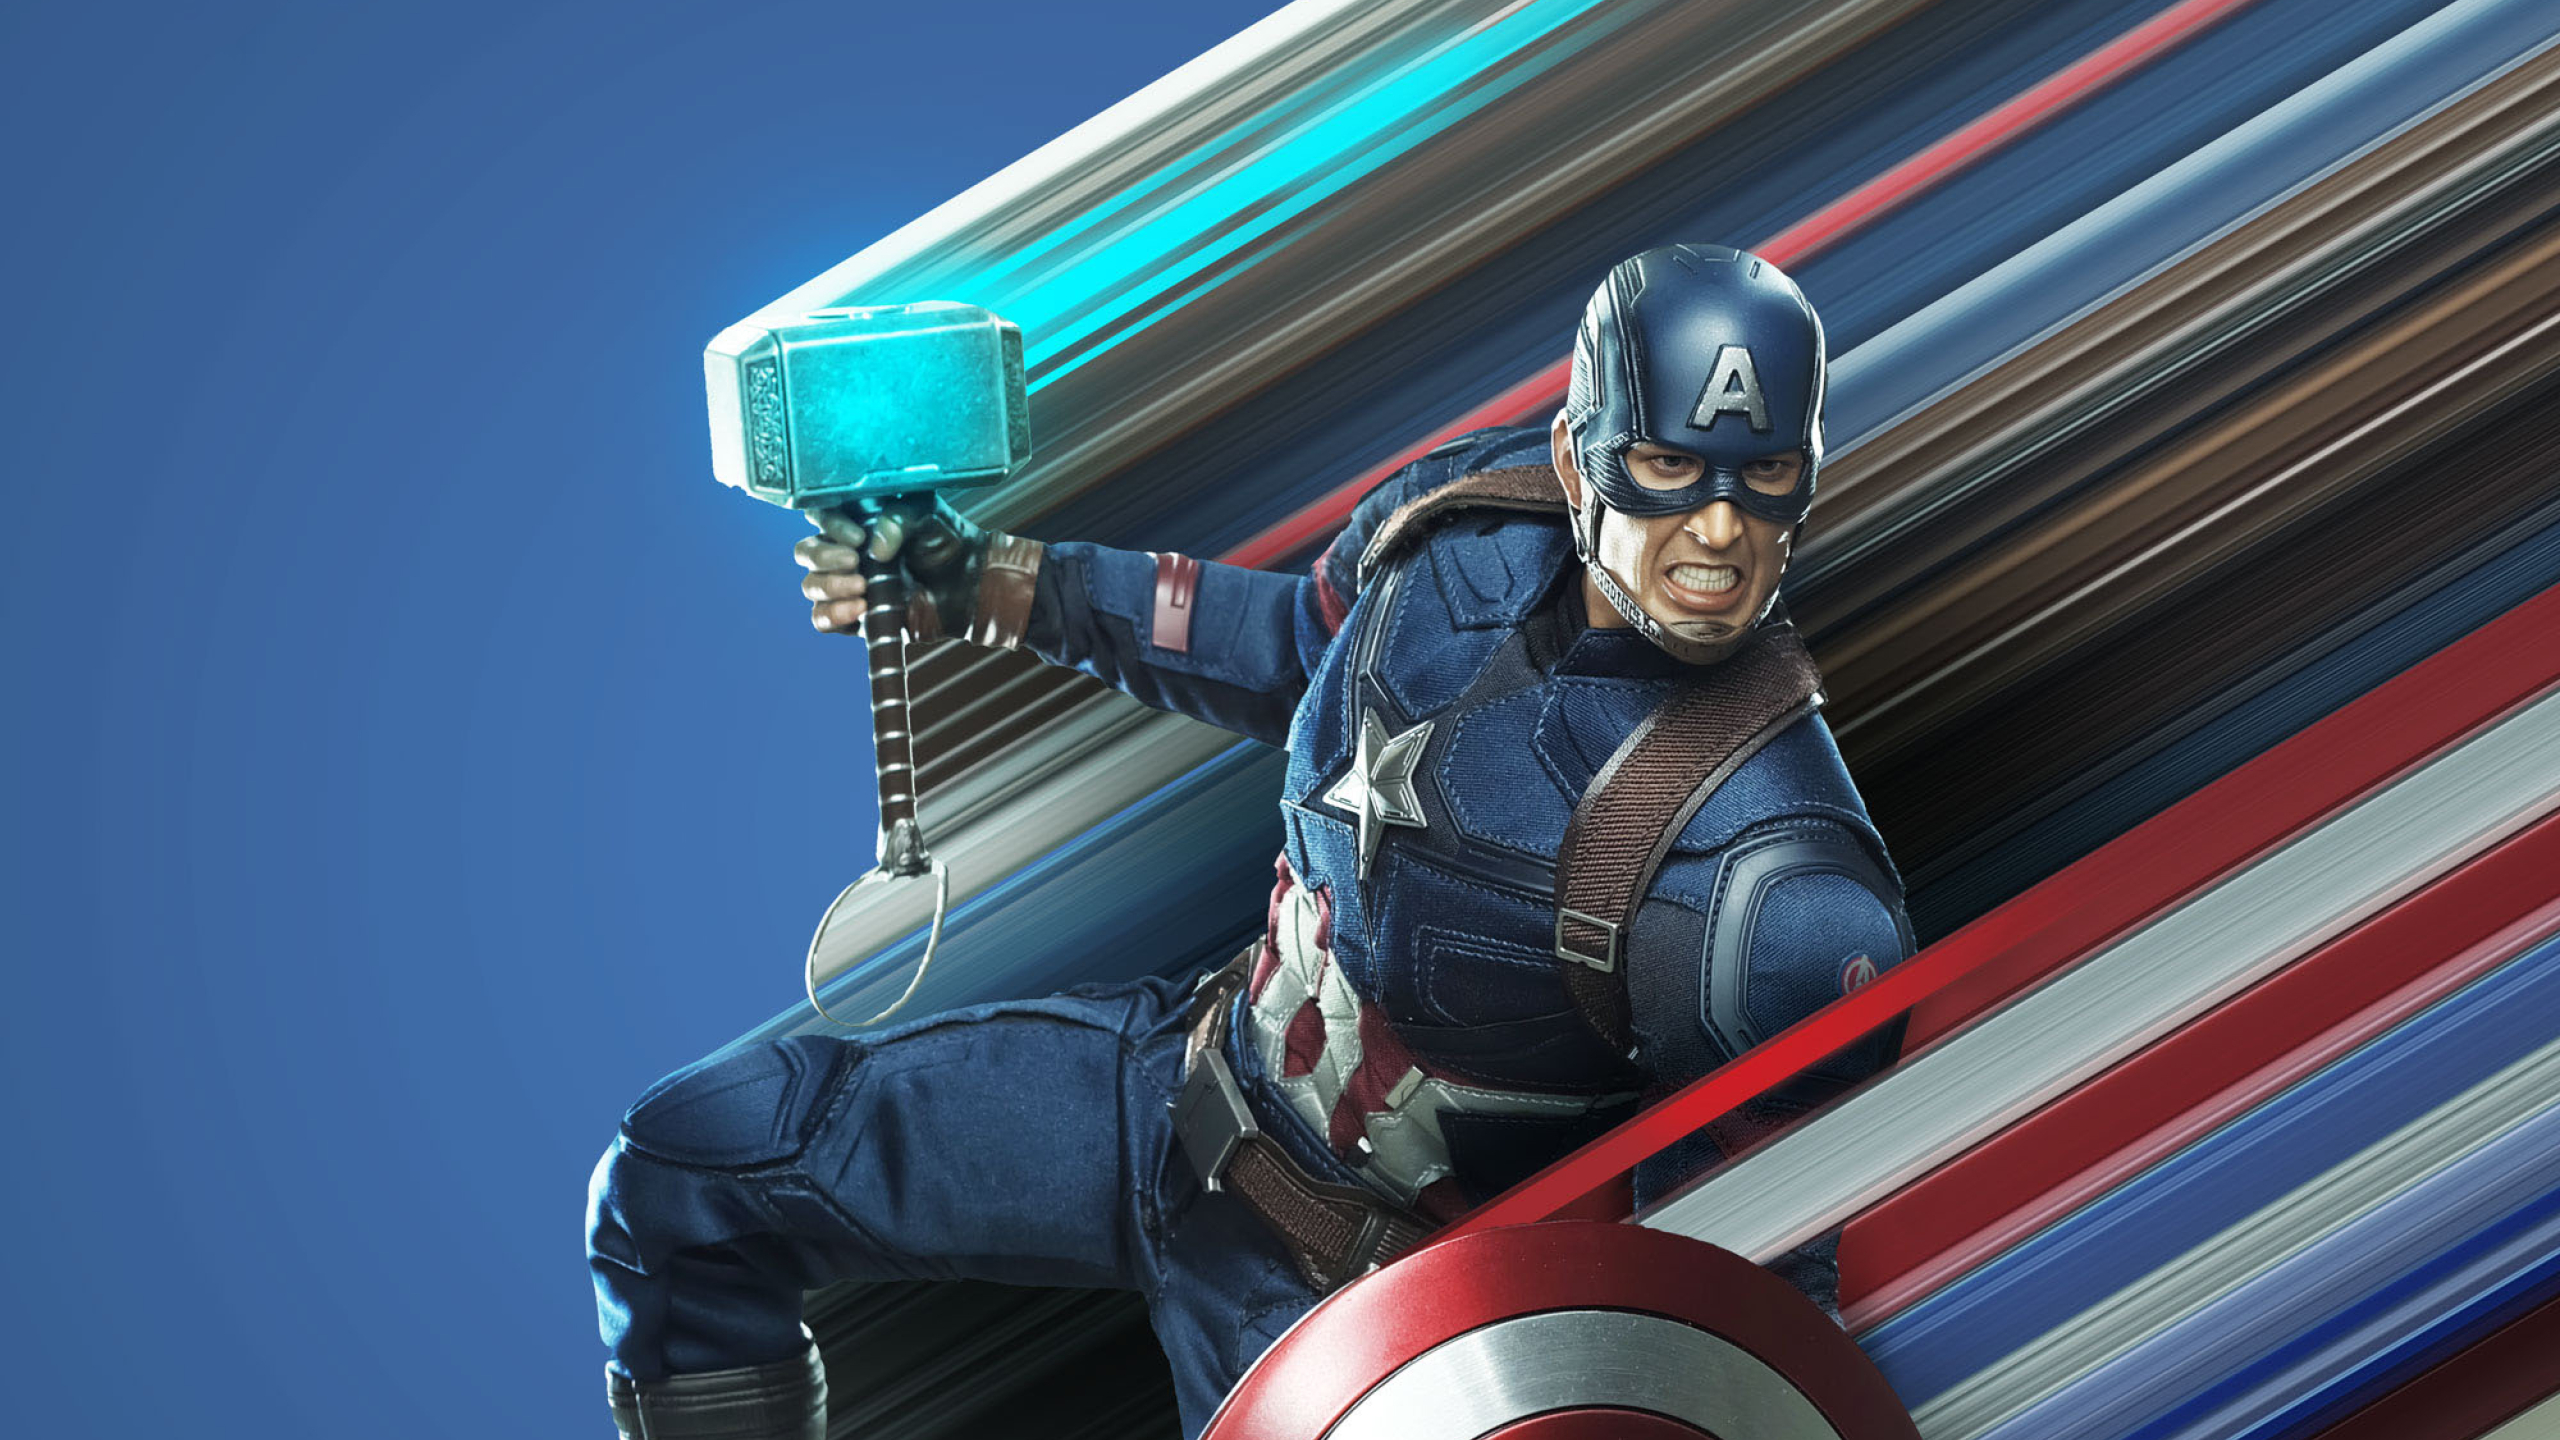 2560x1440 Captain America Avengers Endgame Art 1440p